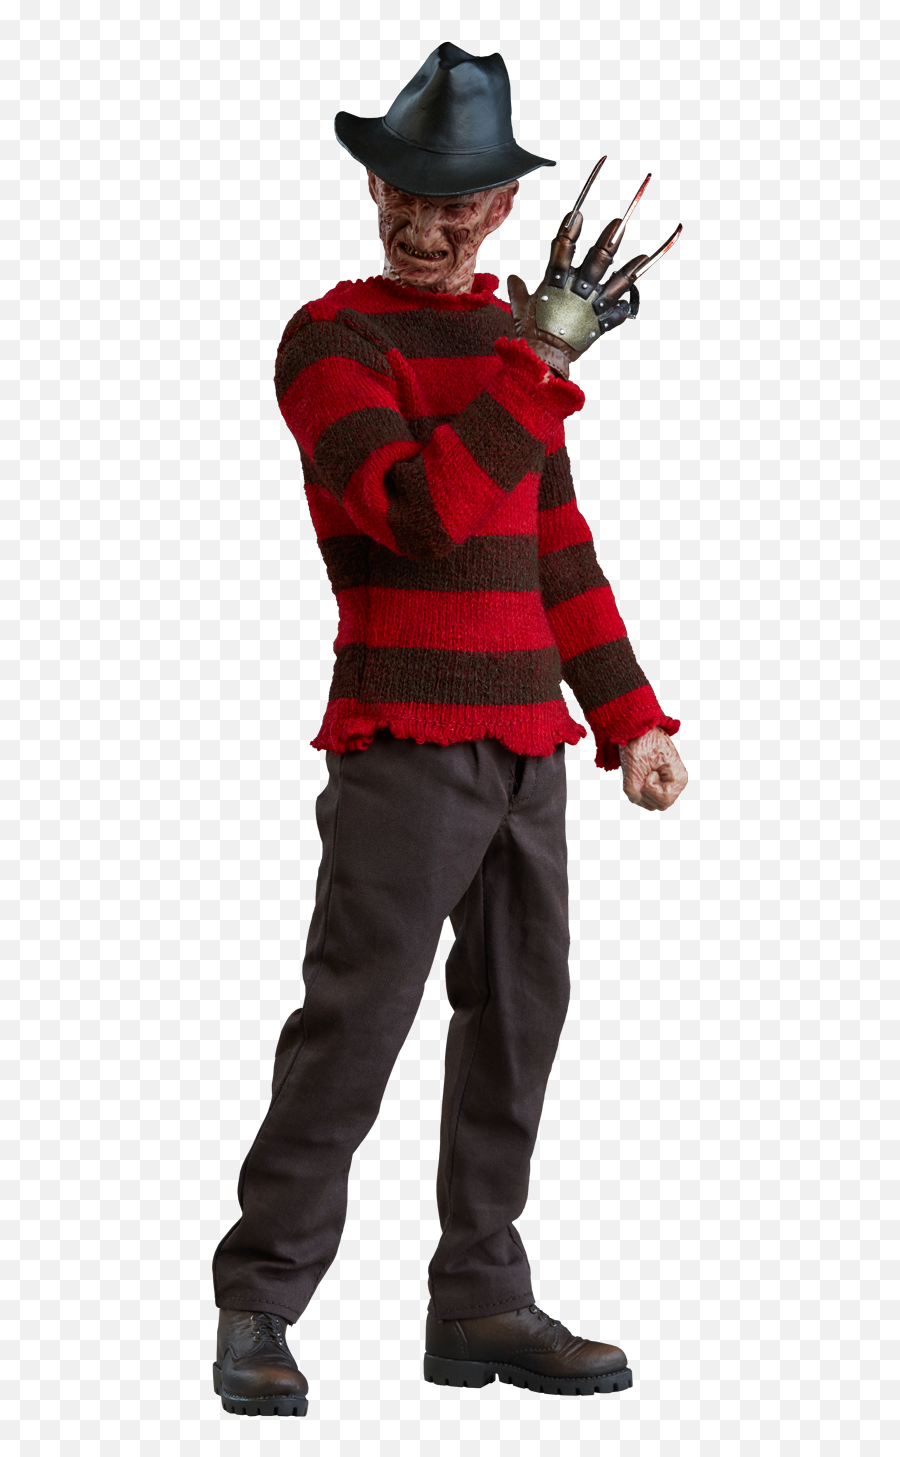 Freddy Krueger Png 9 Image - Freddy Krueger Png,Freddy Krueger Png